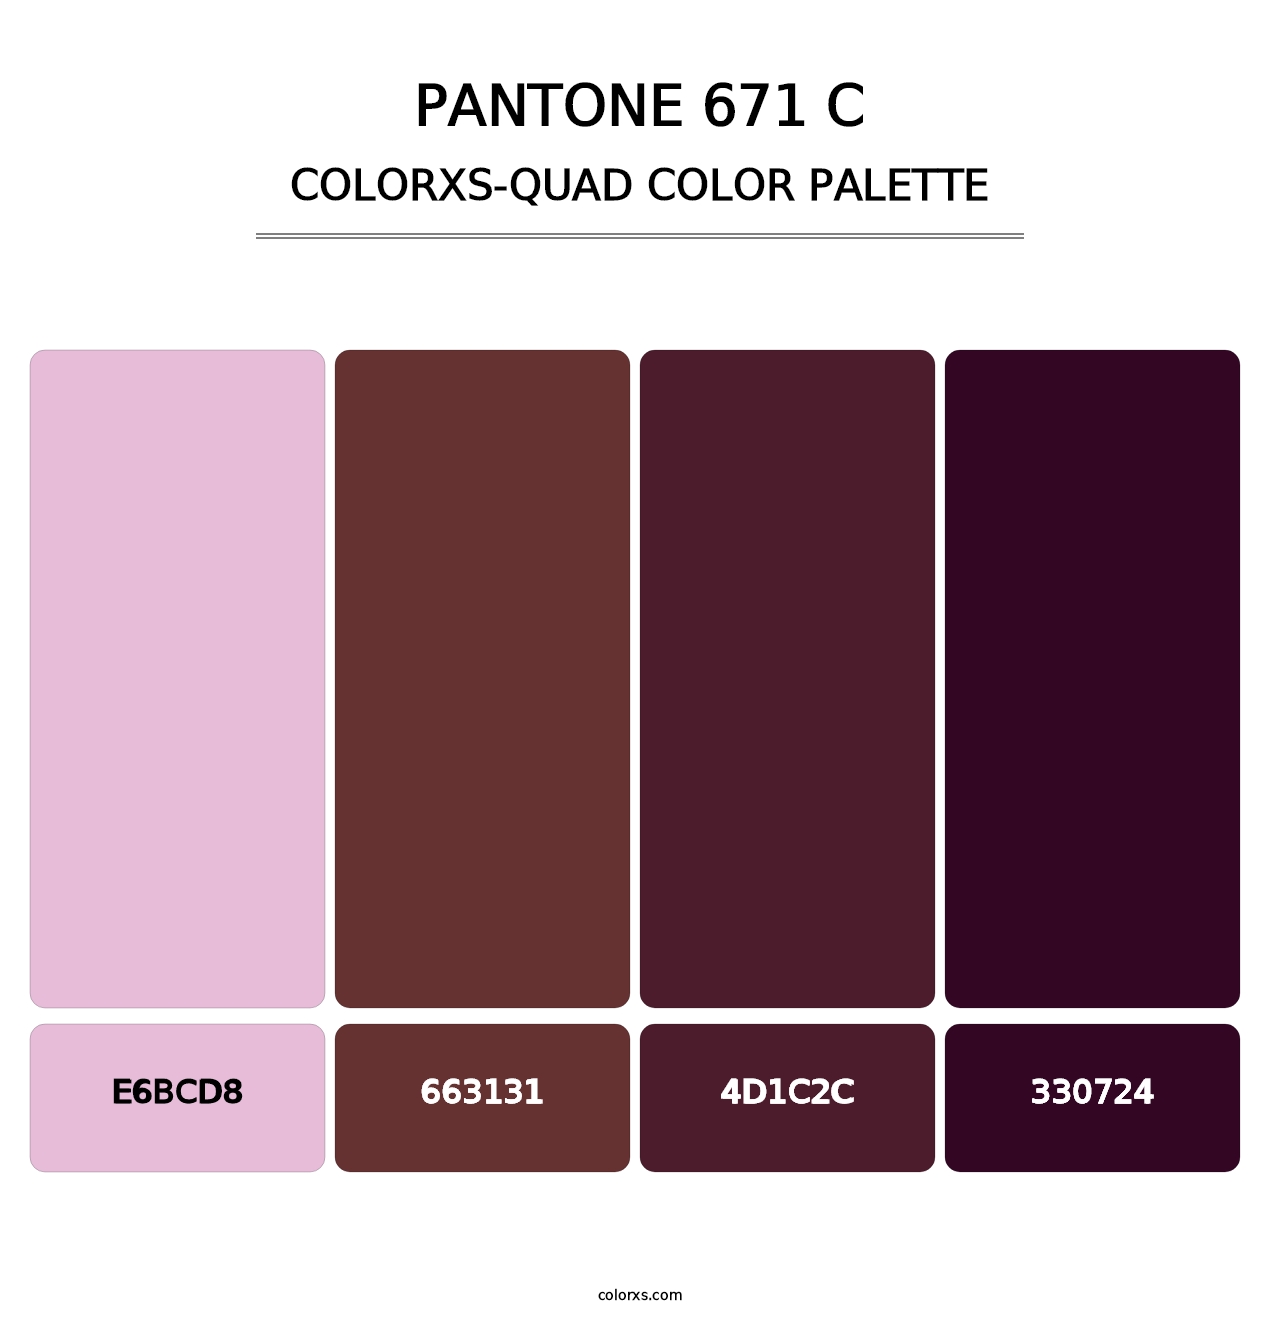 PANTONE 671 C - Colorxs Quad Palette